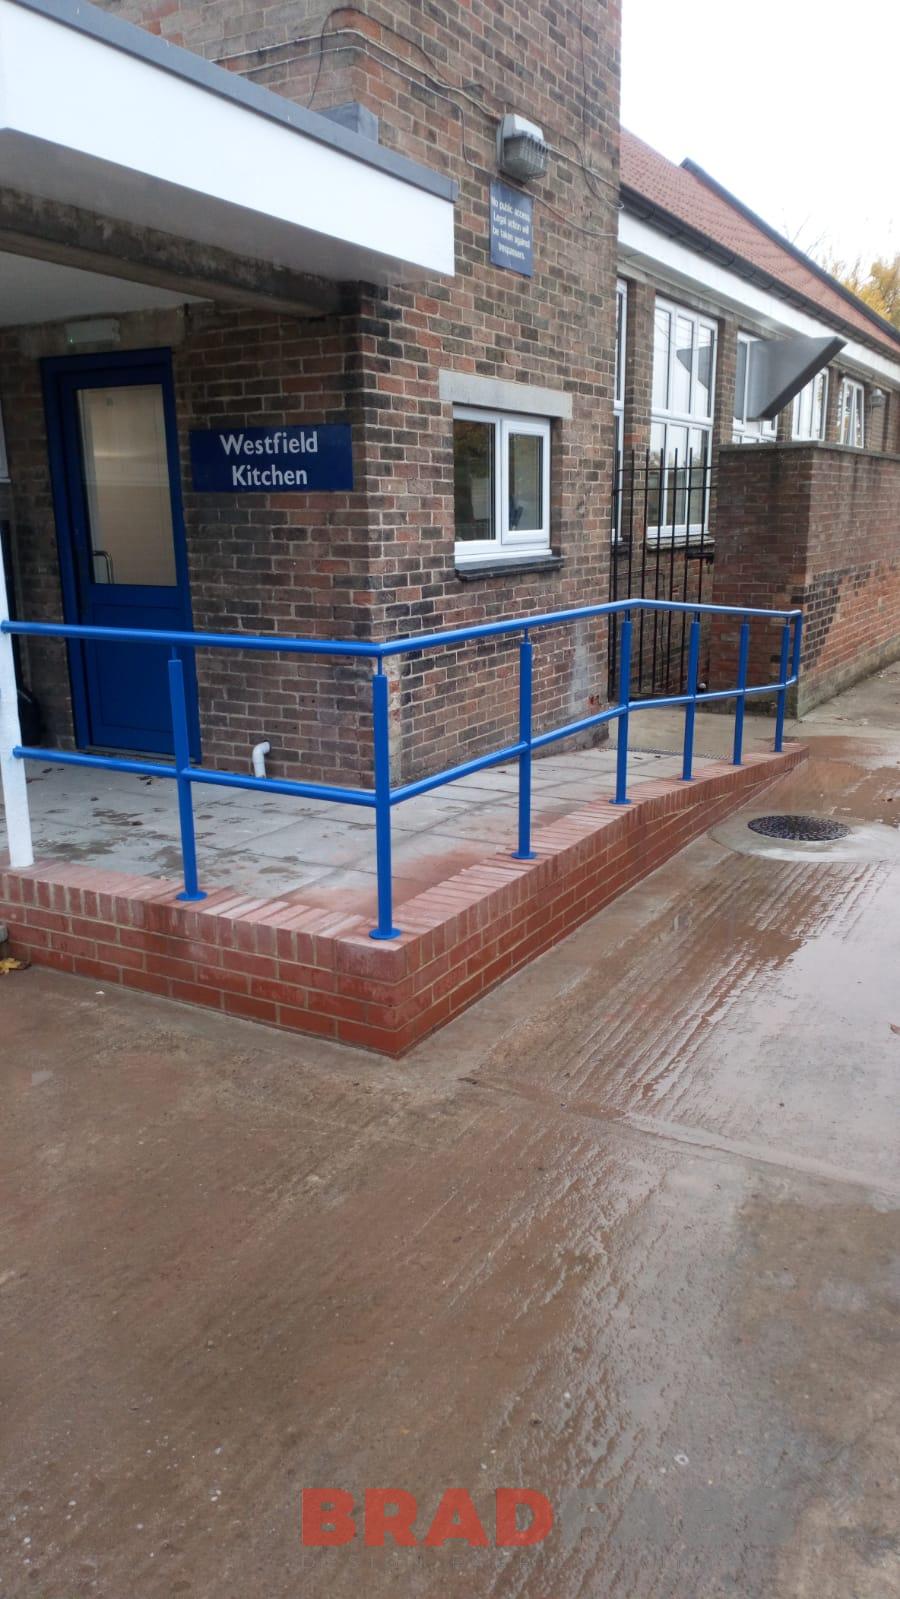 External steel railings for a school